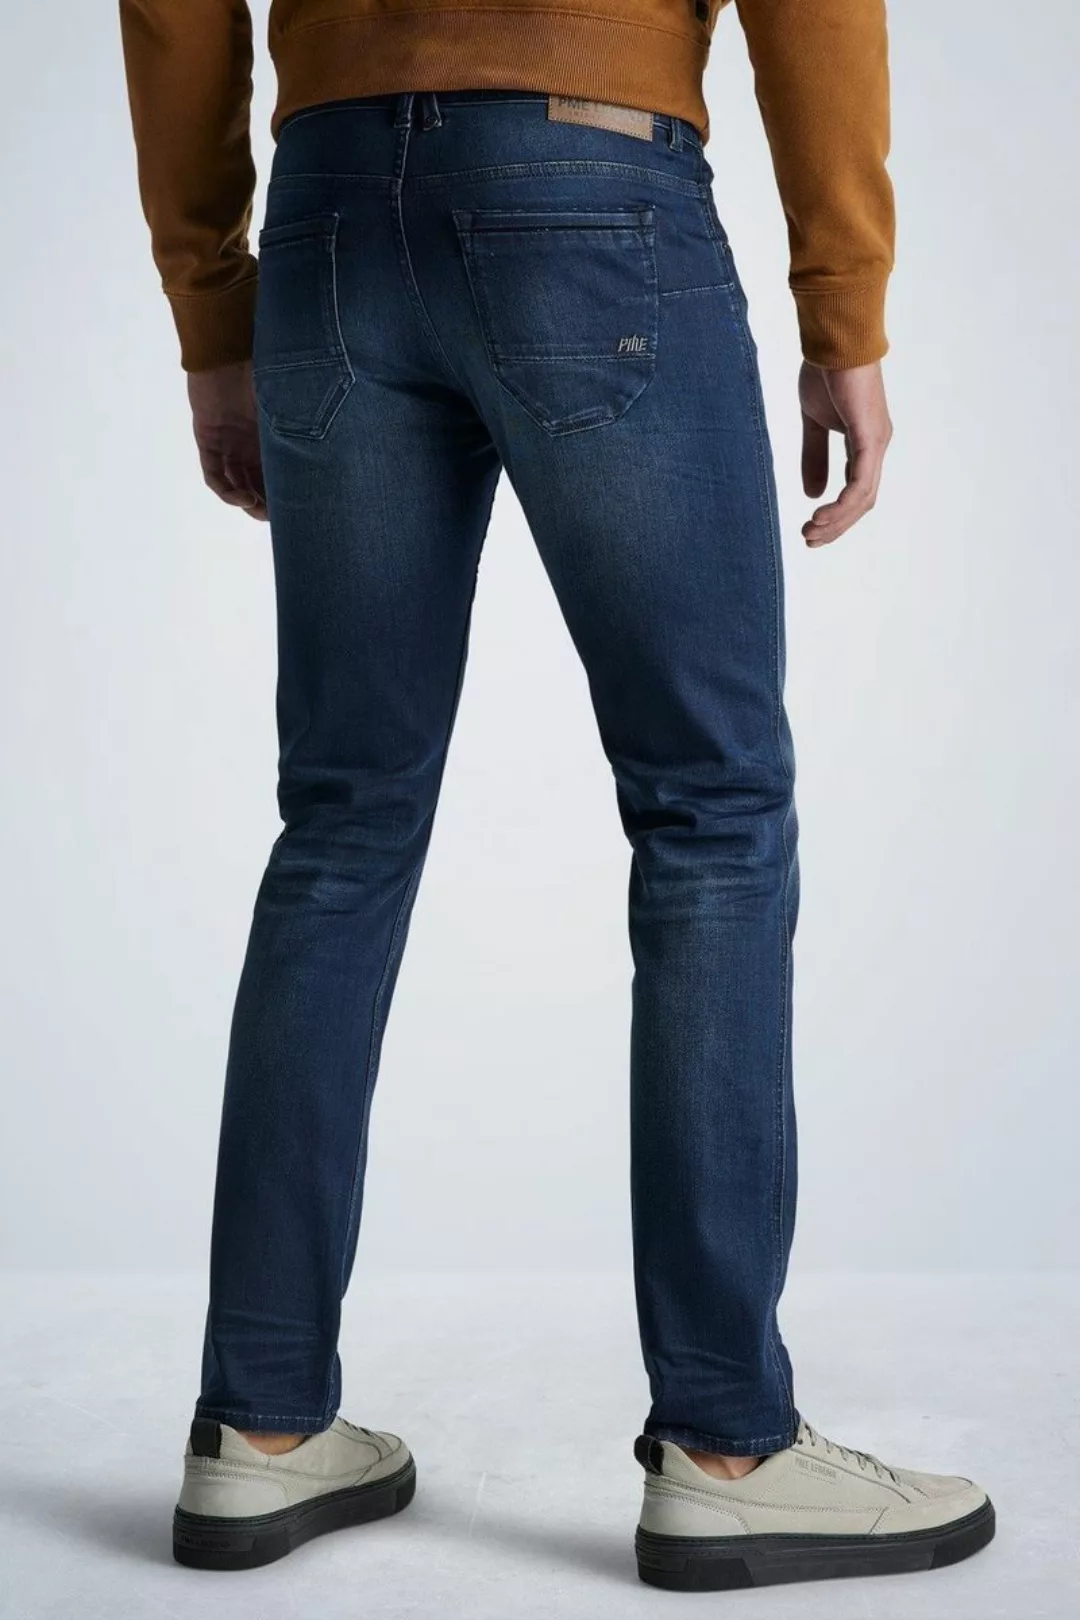 PME Legend Nightflight Jeans Dunkelblau NBW - Größe W 36 - L 34 günstig online kaufen